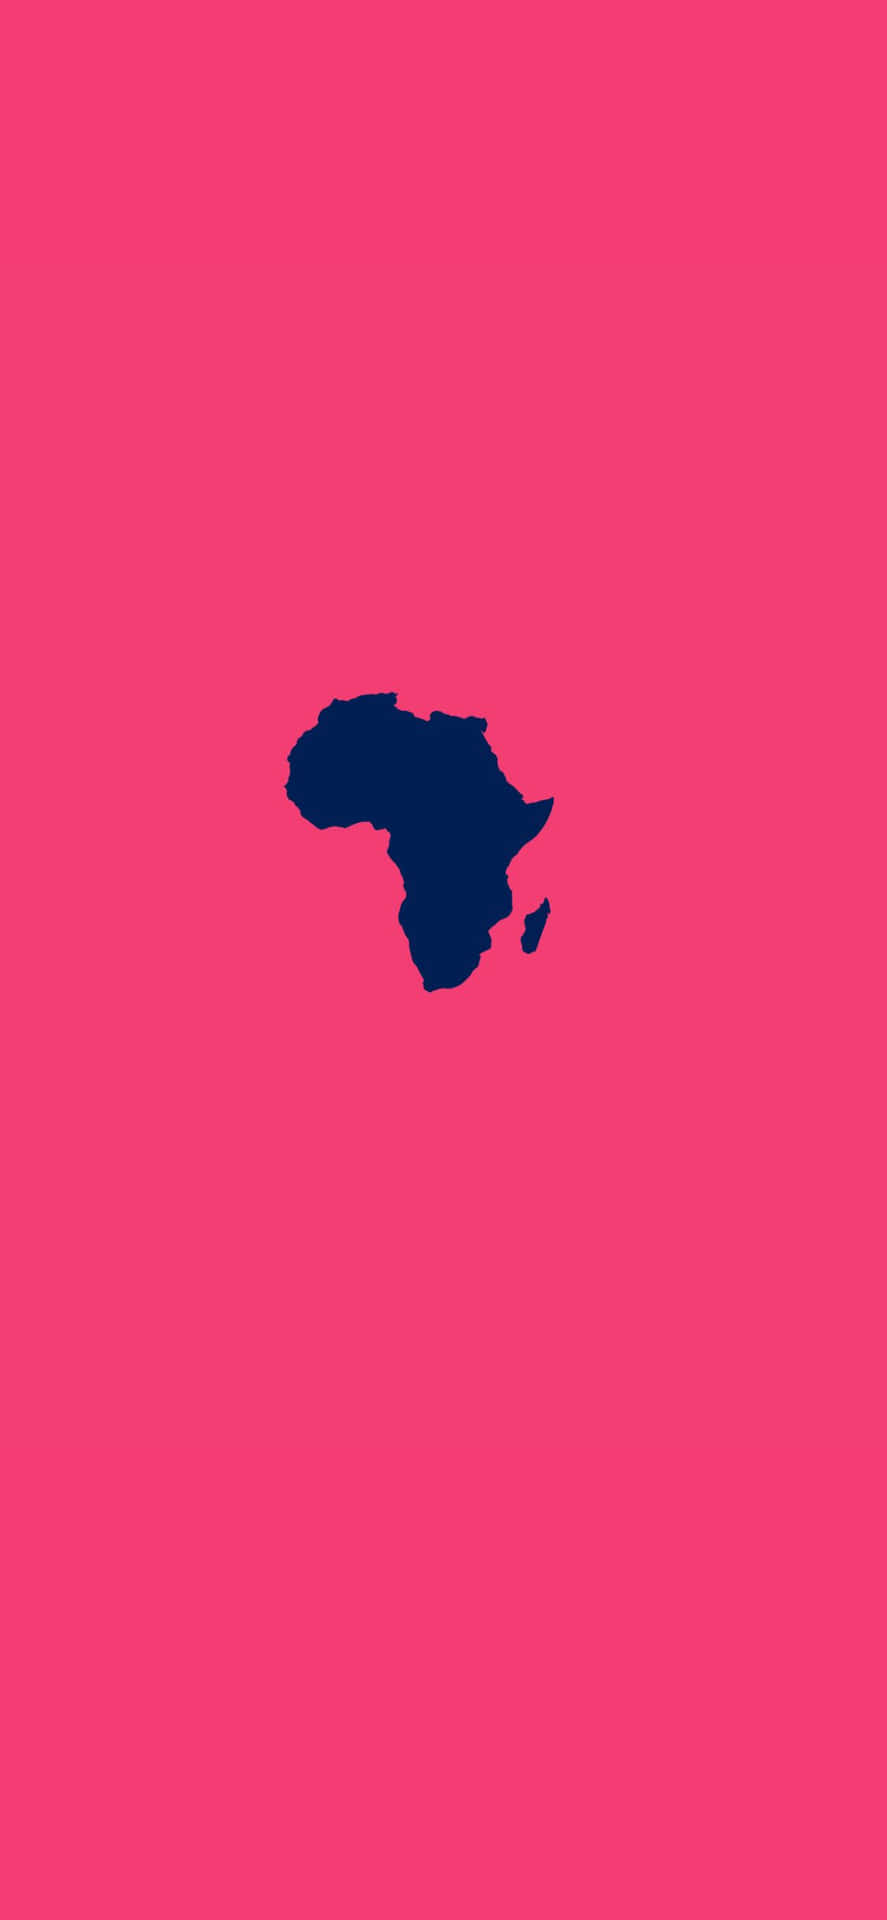 Afrikanskkarta På Rosa Bakgrund.